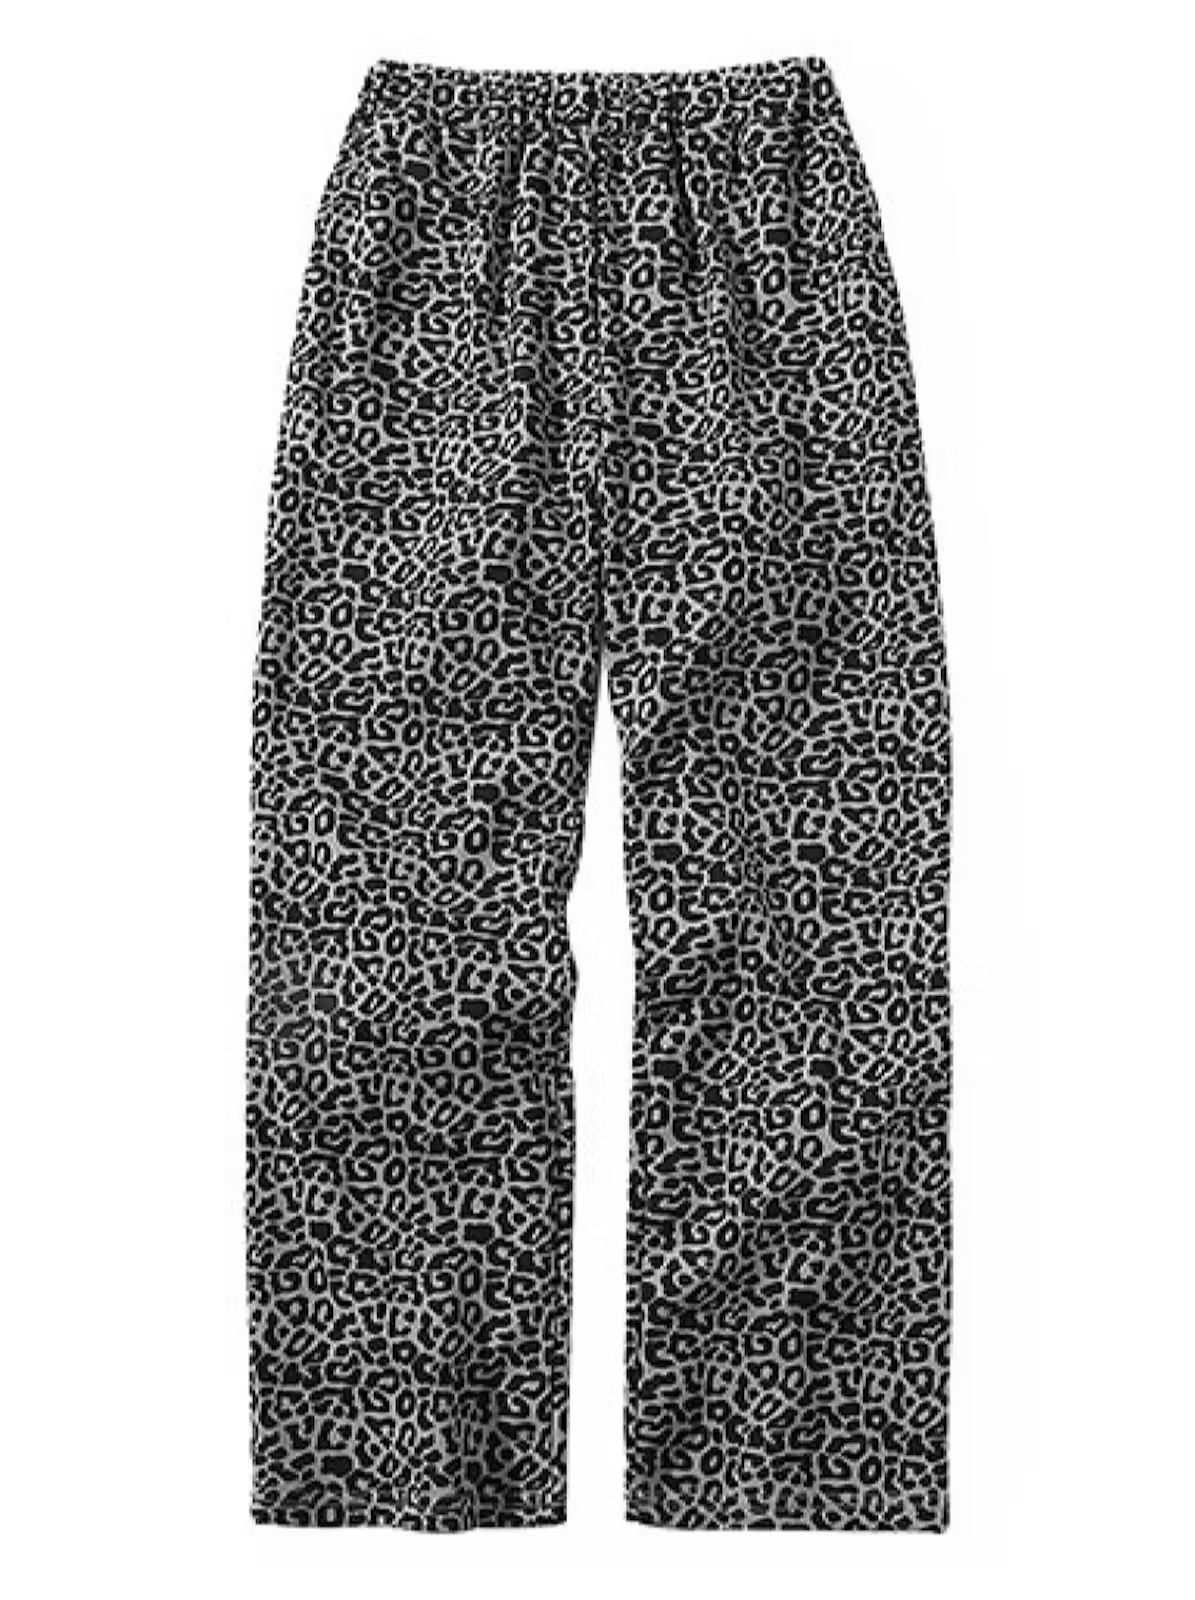 Vintage Leopard pants | Grailed